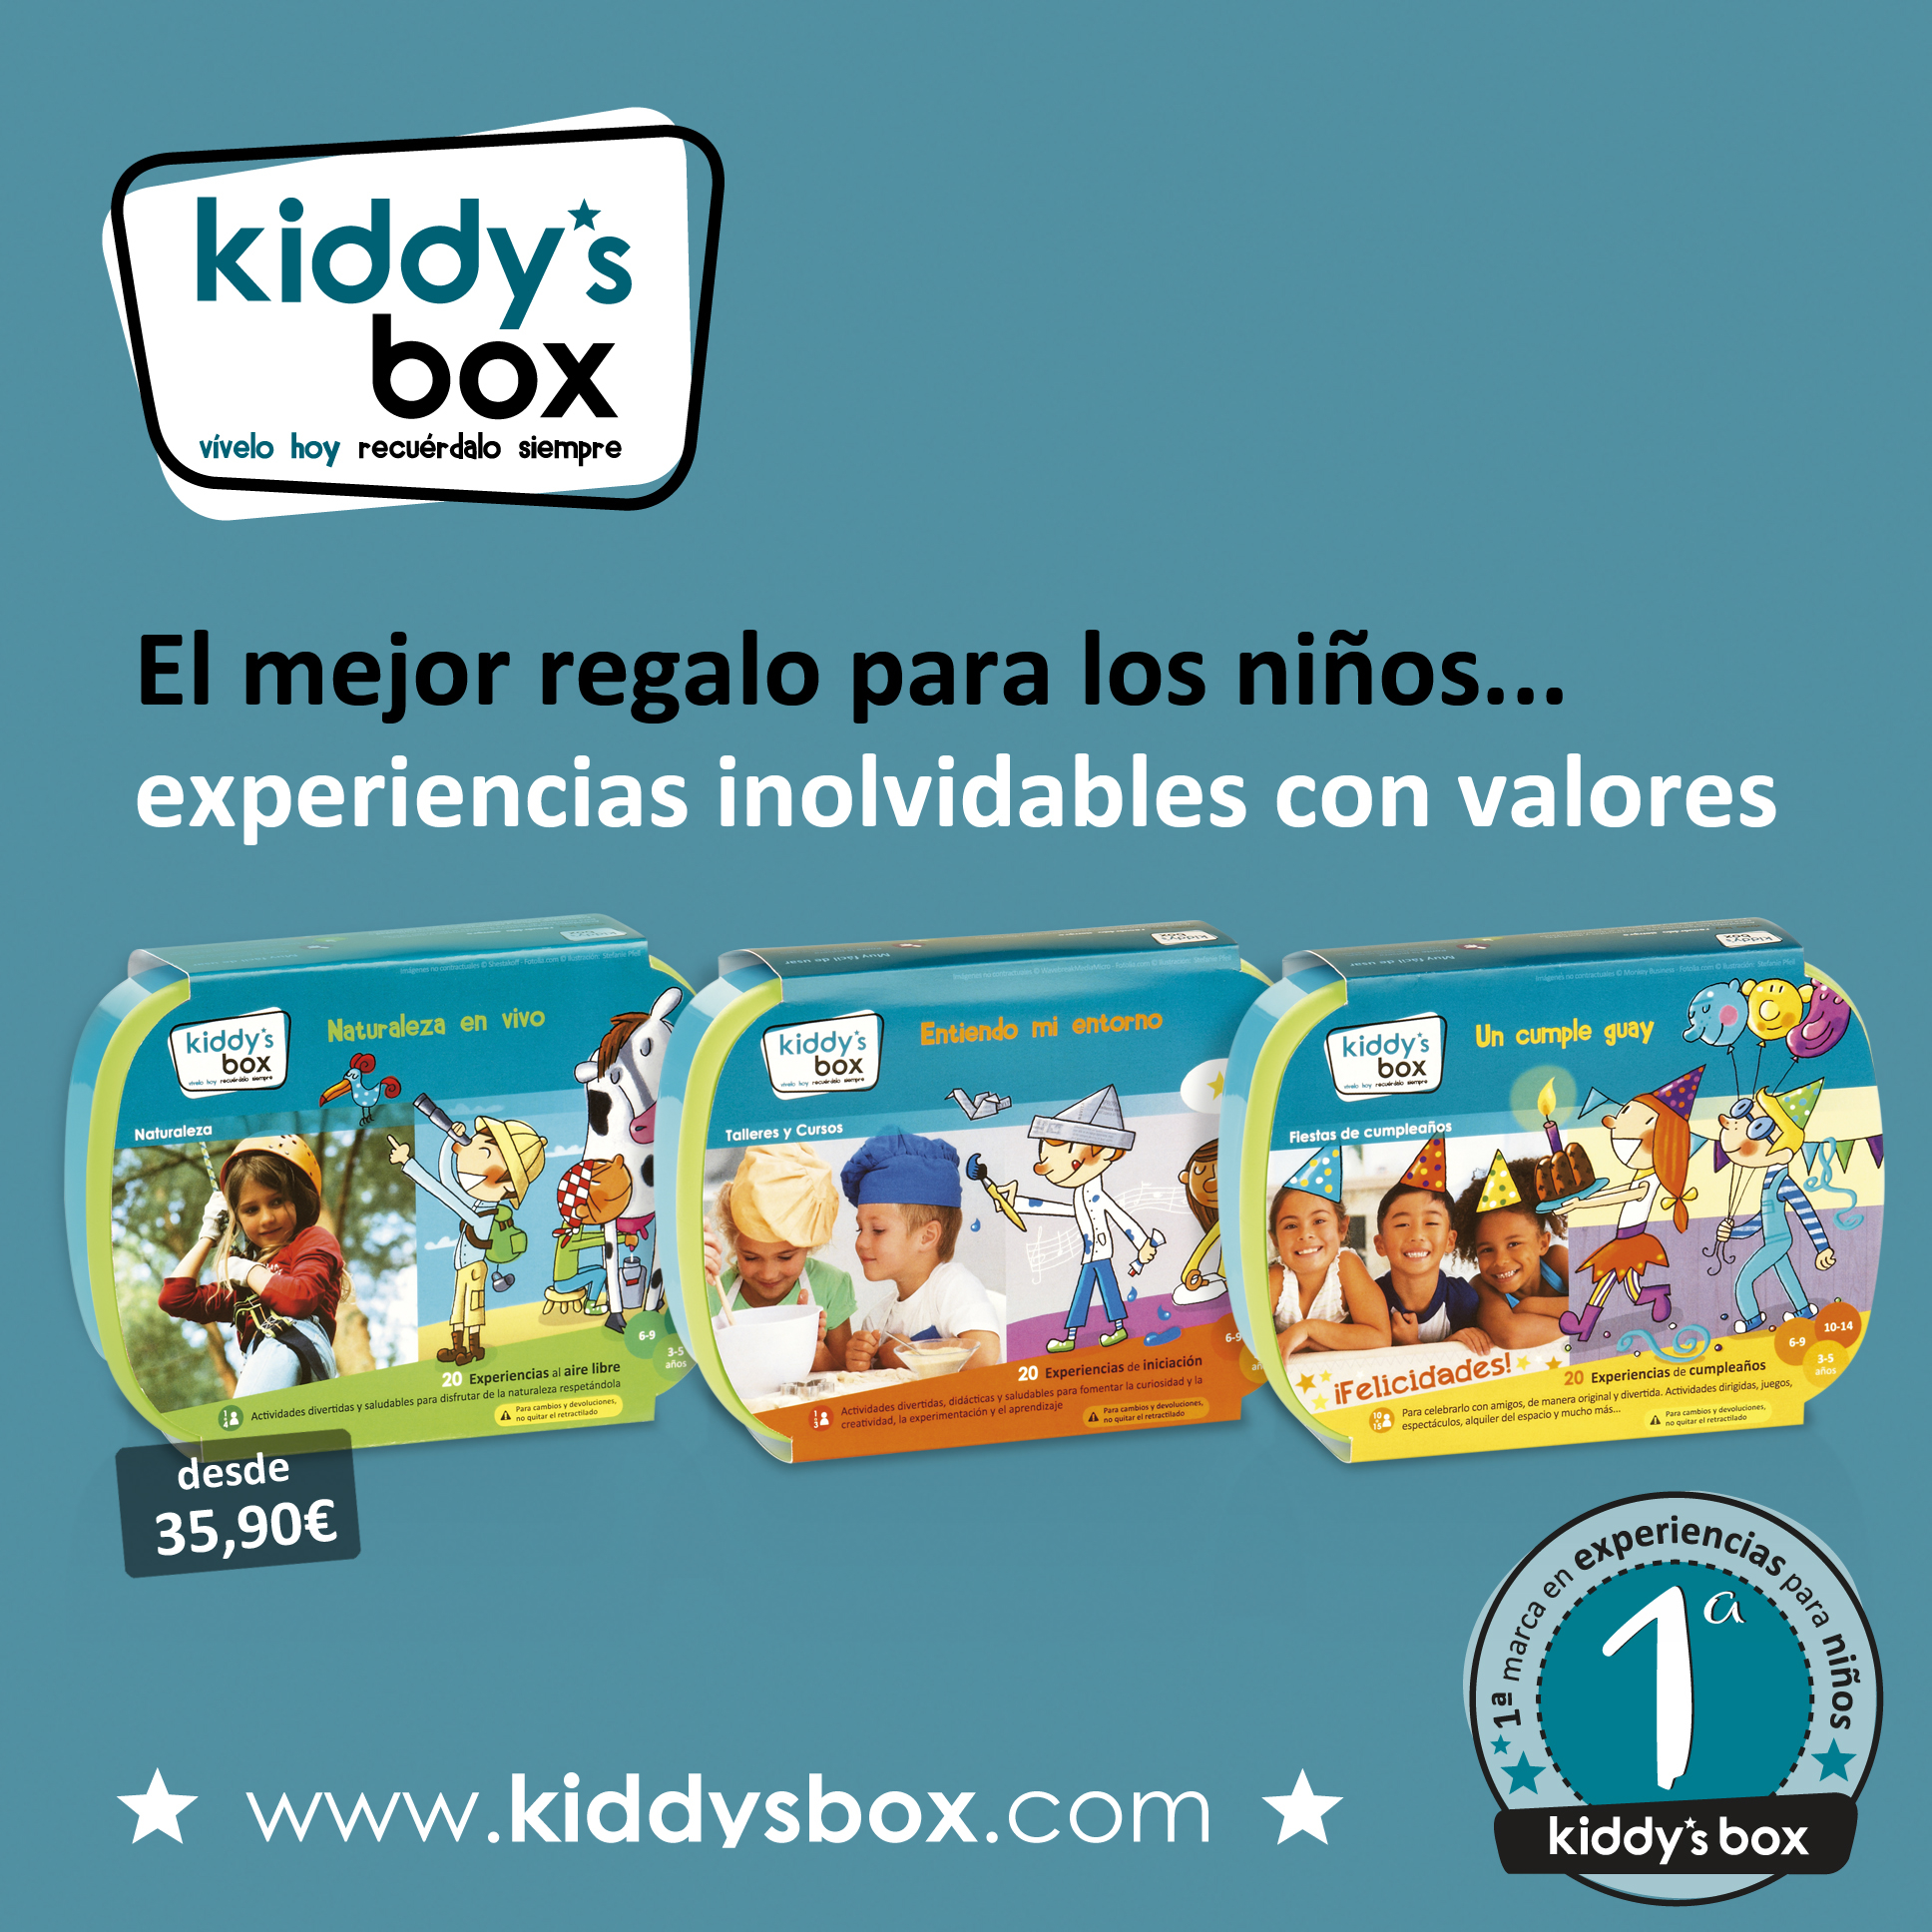 KiddysBox regalo original y divertido para Primera Comunión